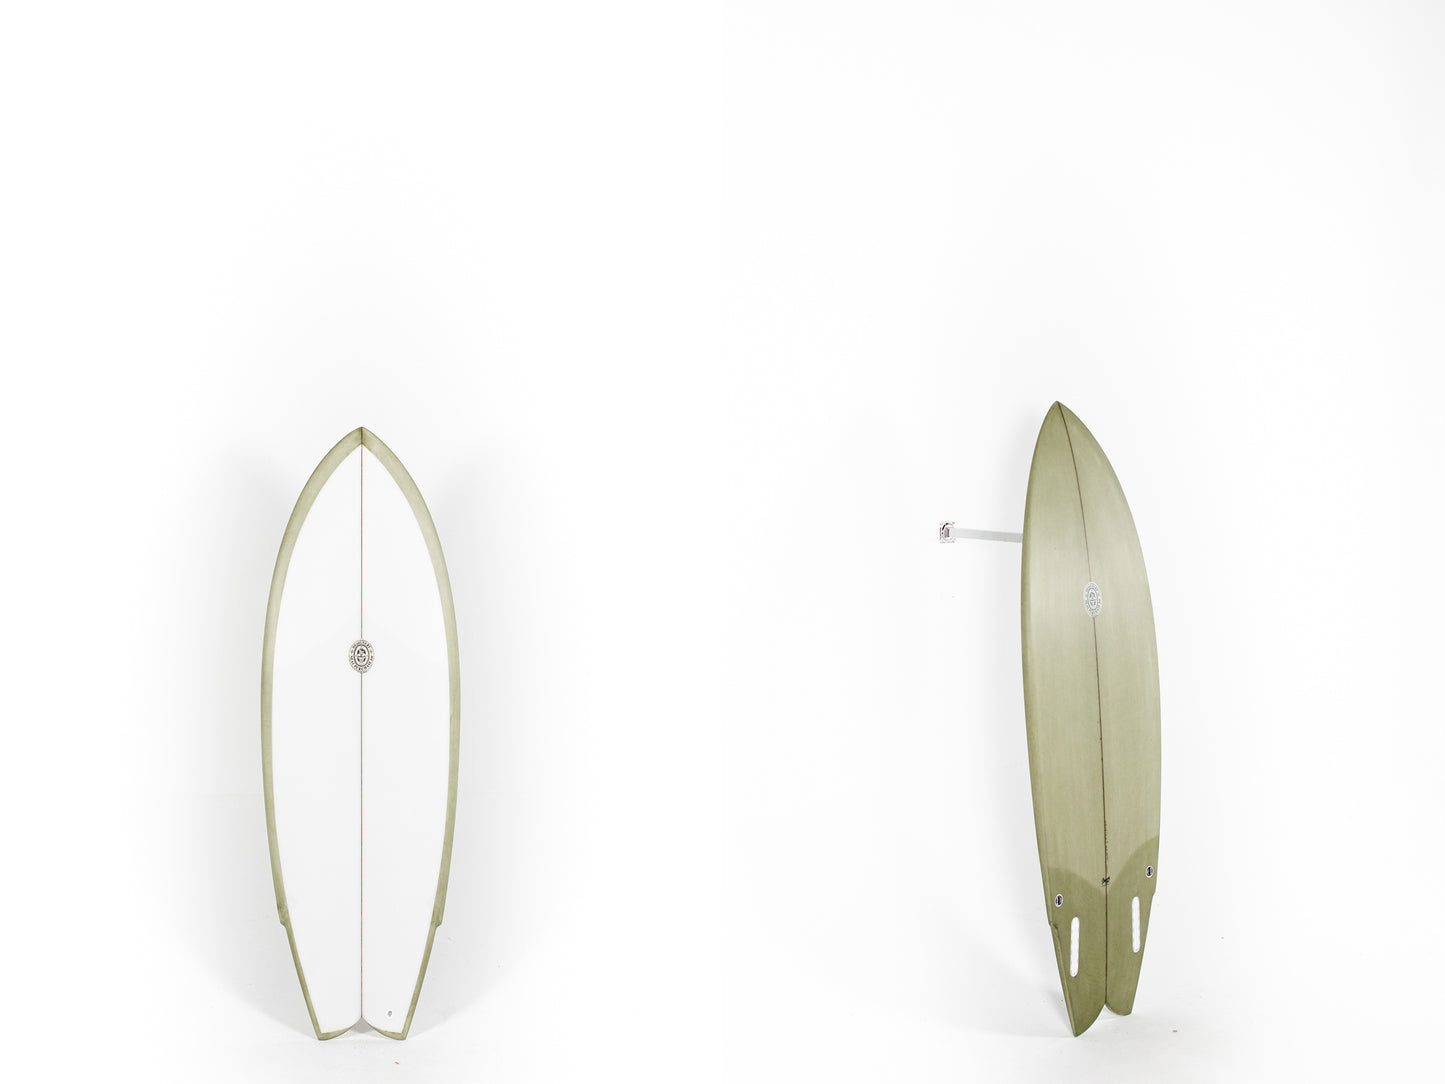 PUKAS SURF SHOP